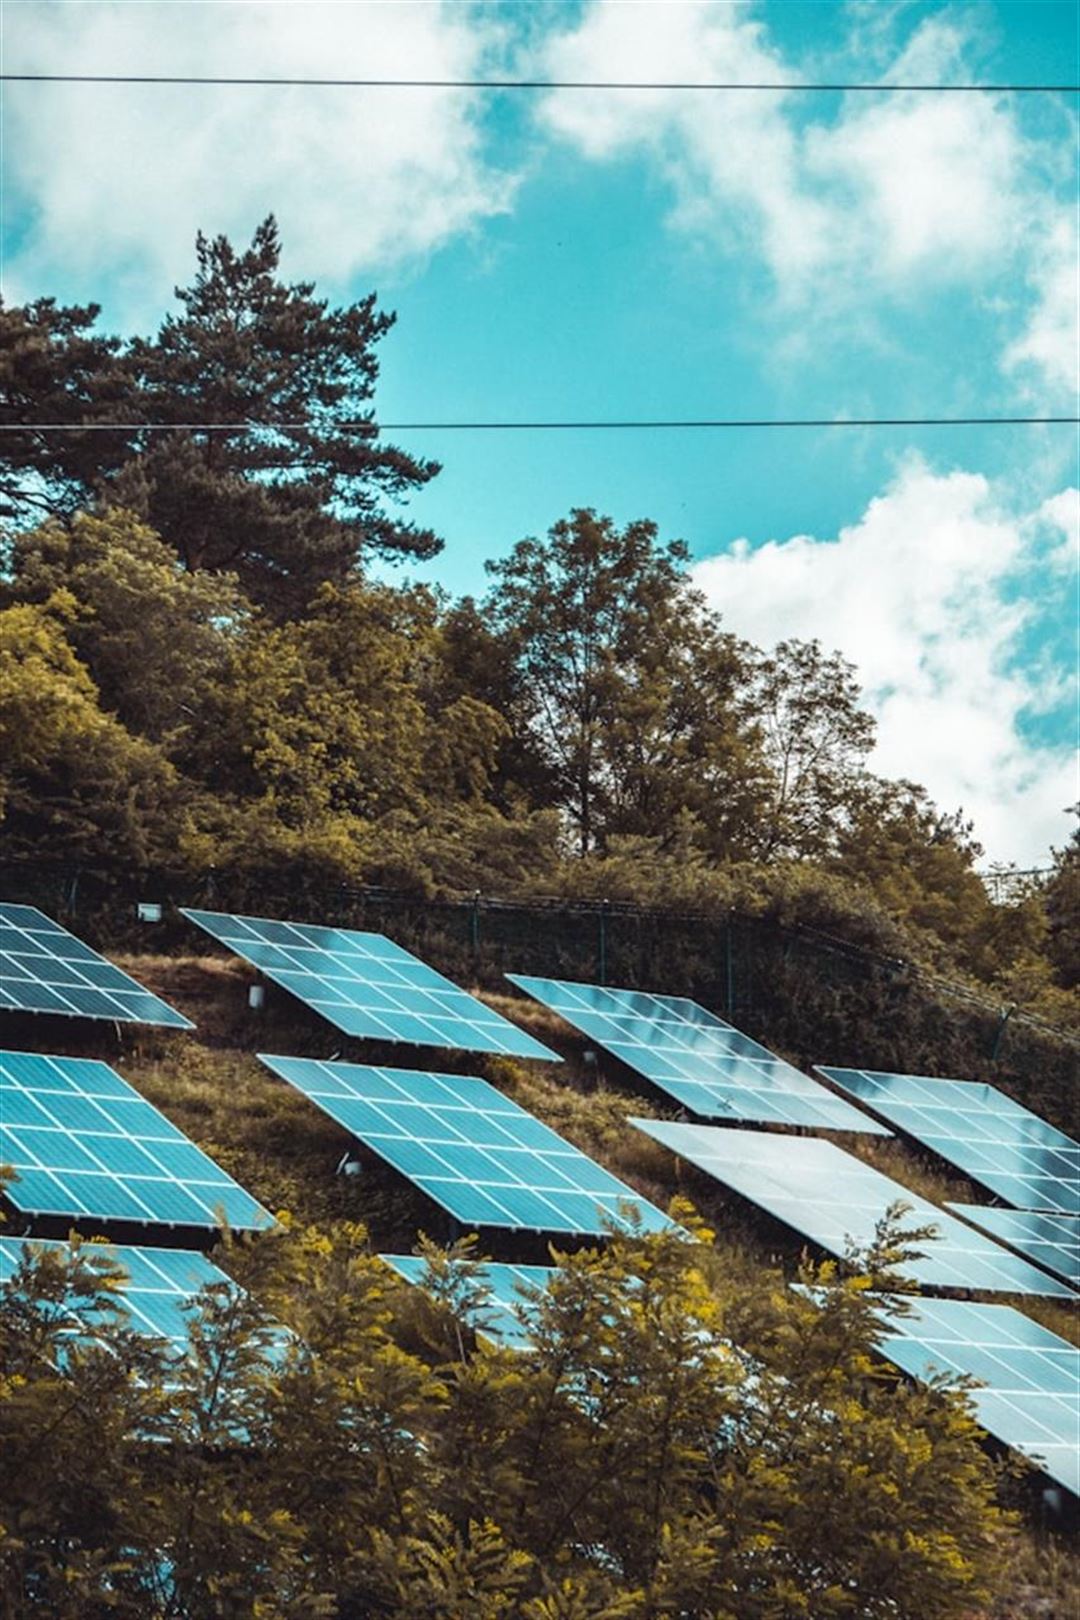 Investeringsmulighed: Hvad koster et solcelleanlæg?